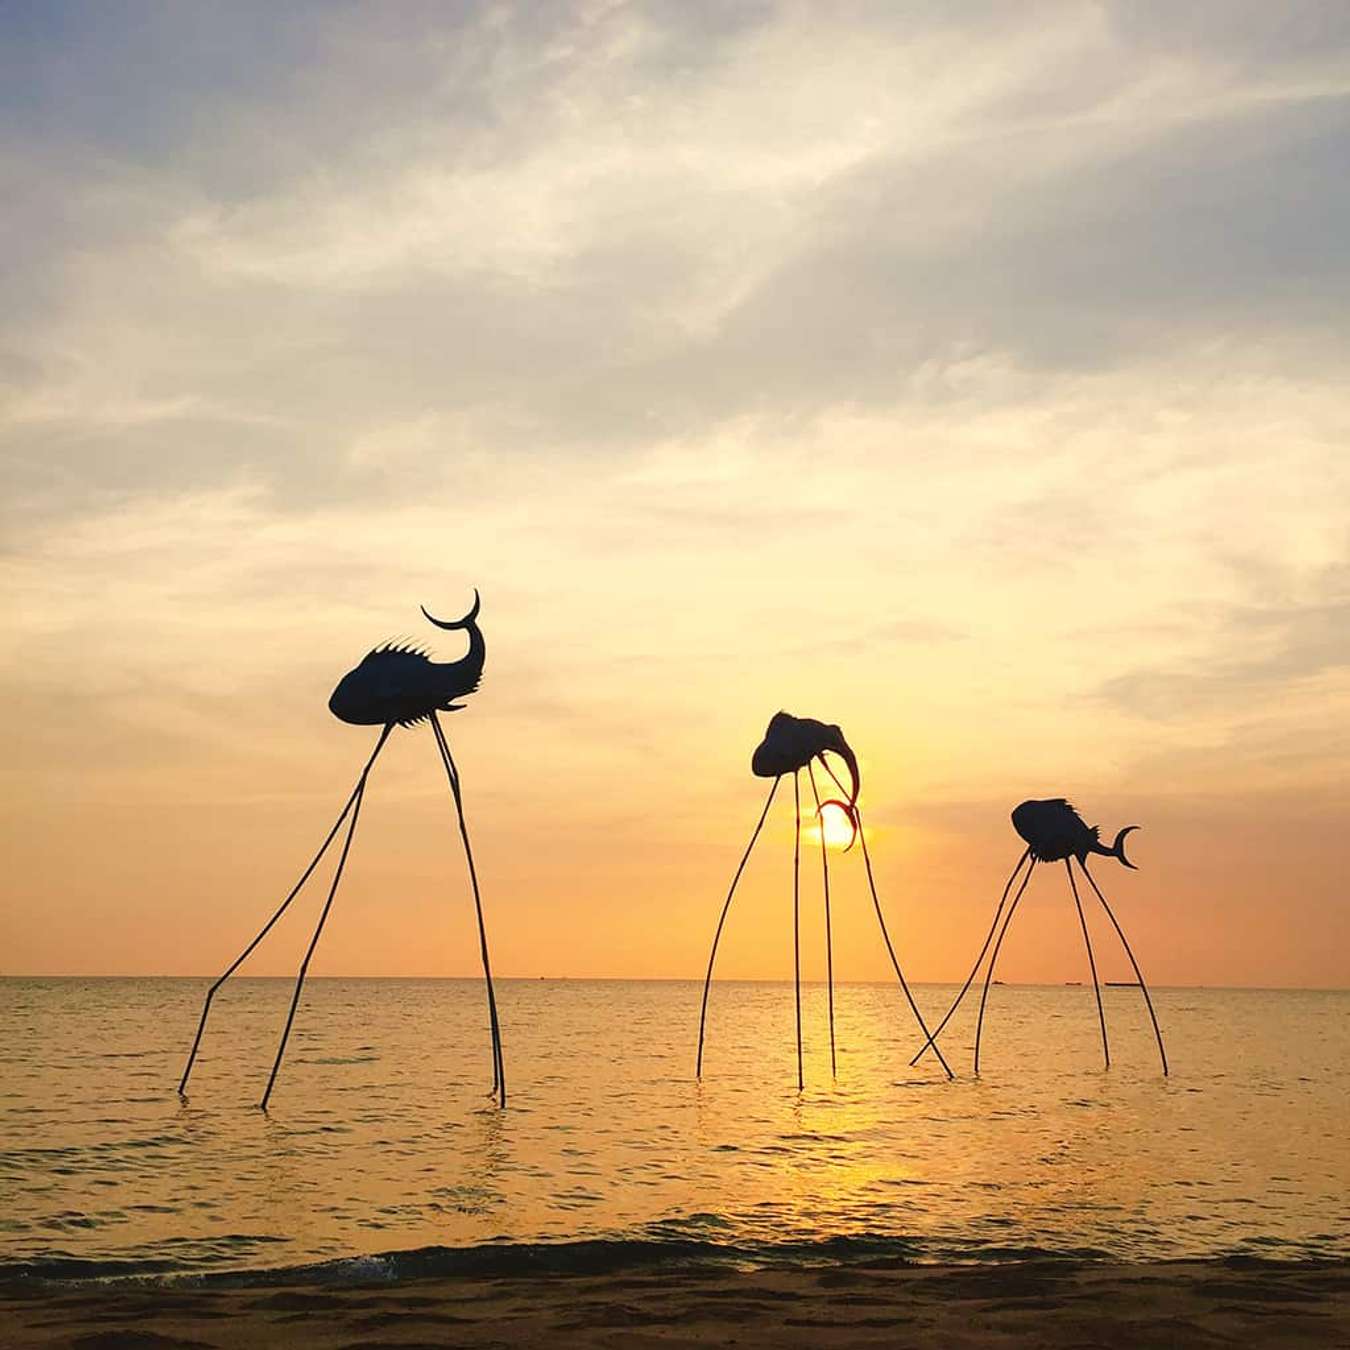 Đảo Ngọc ở tỉnh Phú Quốc là một điểm đến nổi bật của du lịch Việt Nam. Với bãi biển đẹp và các hoạt động thú vị như chèo thuyền kayak, lặn biển hay ăn hải sản tươi ngon, Đảo Ngọc là lựa chọn hoàn hảo để nghỉ ngơi và tận hưởng cuộc sống. Hãy cùng xem ảnh liên quan đến Đảo Ngọc để thấy rõ hơn vẻ đẹp của thiên nhiên tại đây.